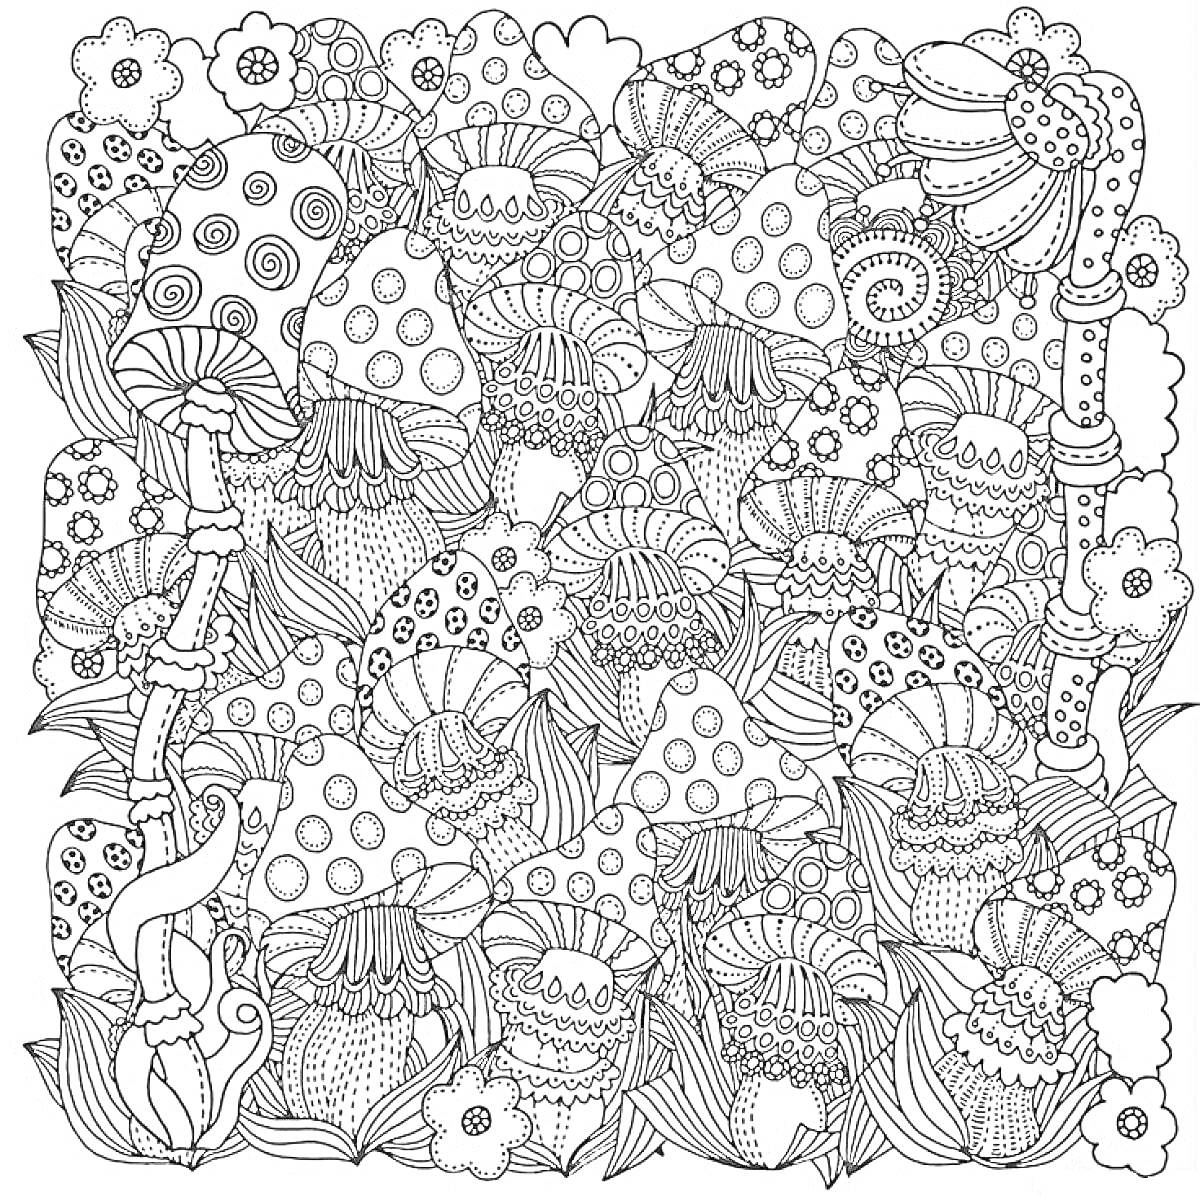 Раскраска Густой лес из крупных грибов и цветов с множеством мелких деталей